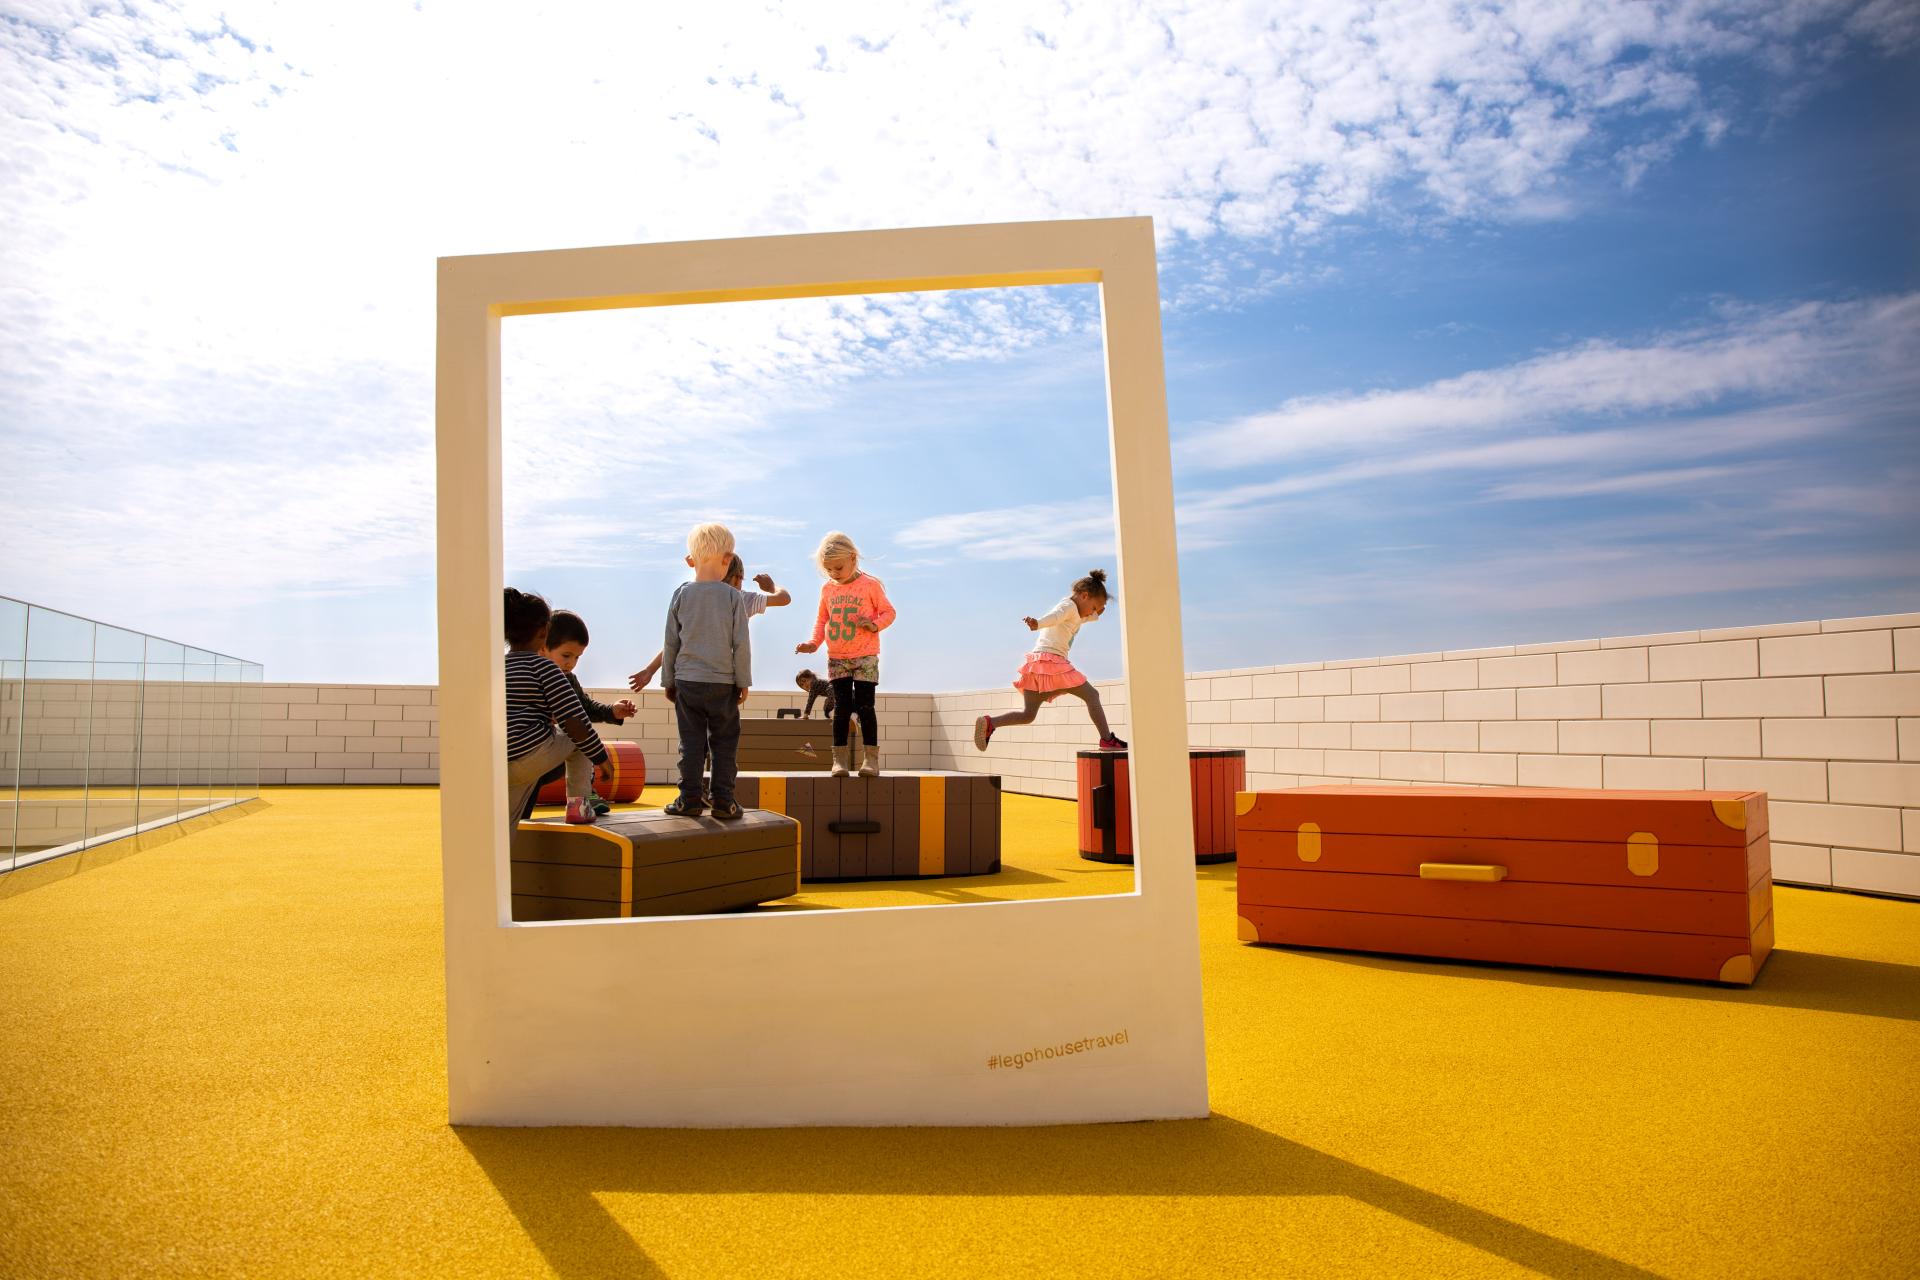 MONSTRUM playground polaroid frames pictures lego house